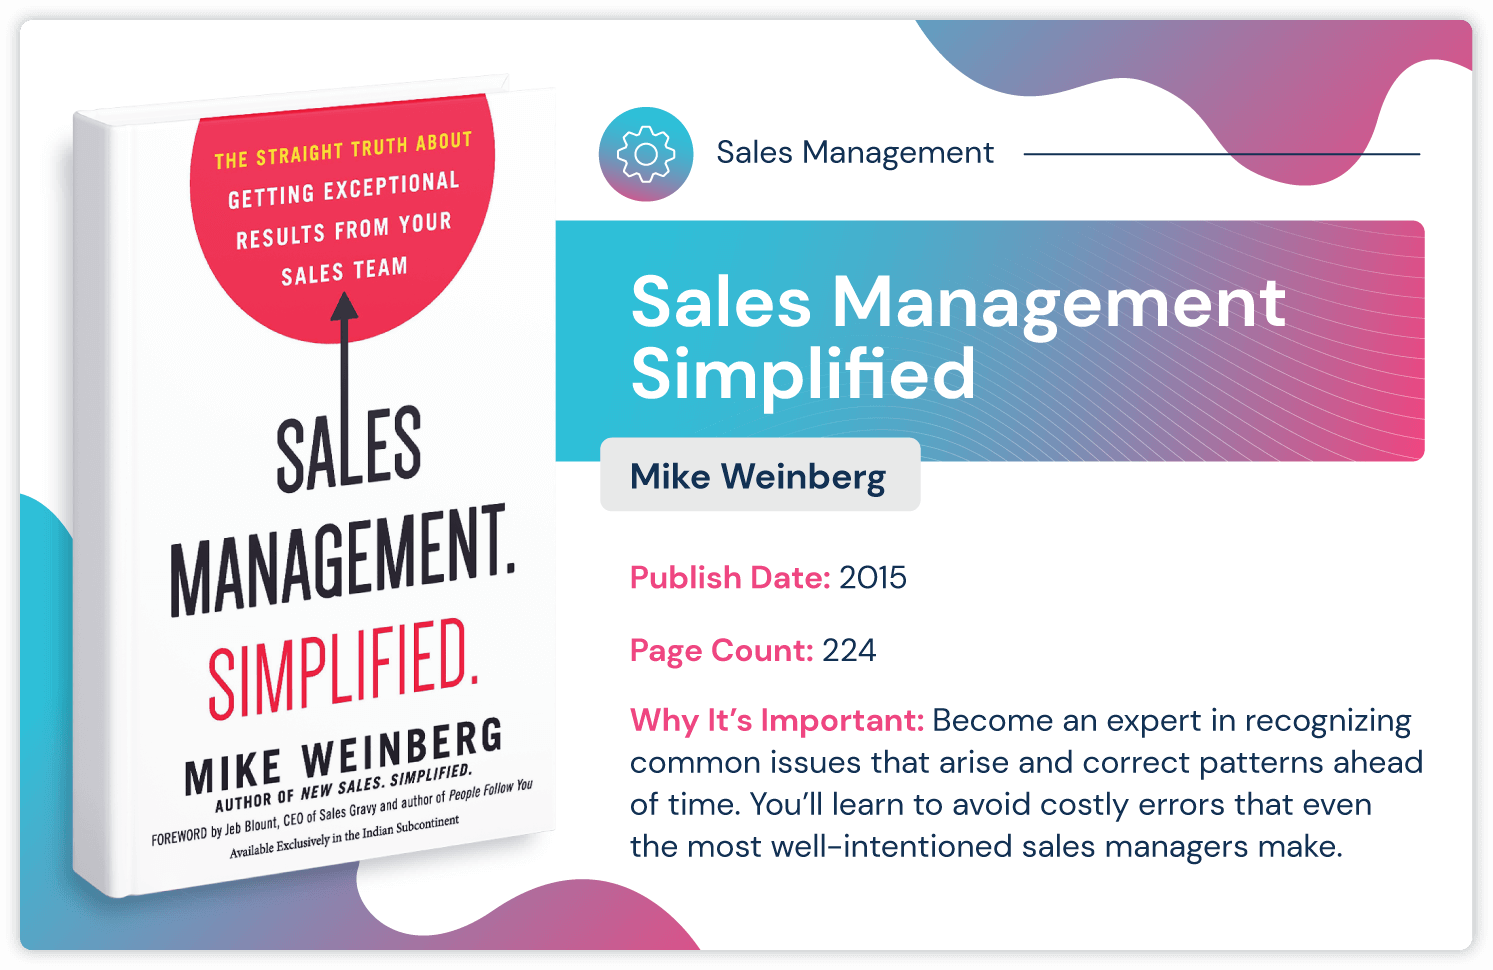 Libro di gestione delle vendite intitolato "Gestione delle vendite semplificata da Mike Weinberg sull'evitare costosi errori di gestione delle vendite. Pubblicato nel 2015 e lungo 224 pagine